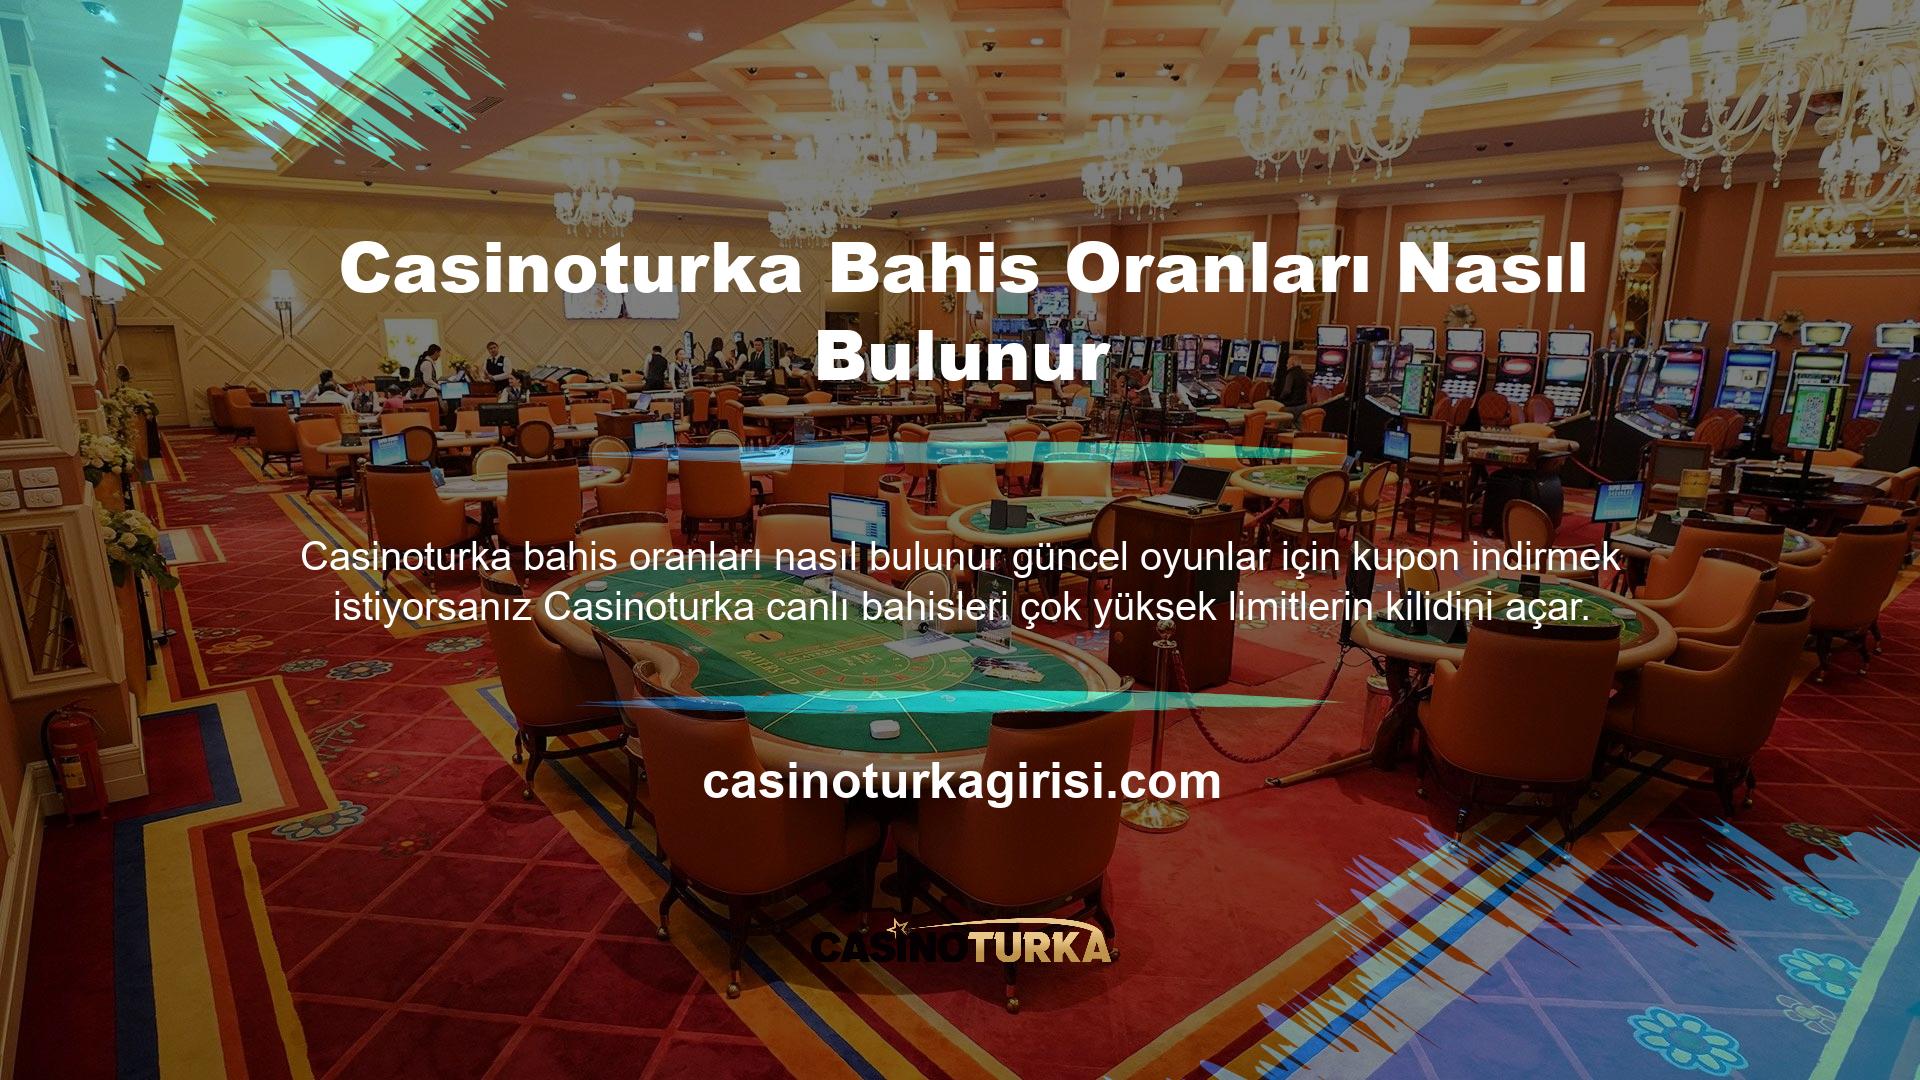 Casinoturka güncel oyunlar bahis oranları nasıl bulunur bonuslarının çevrim şartlarını bilmeniz, canlı bahis sitelerinin sunduğu seçeneklerden yararlanmanızı kolaylaştıracaktır